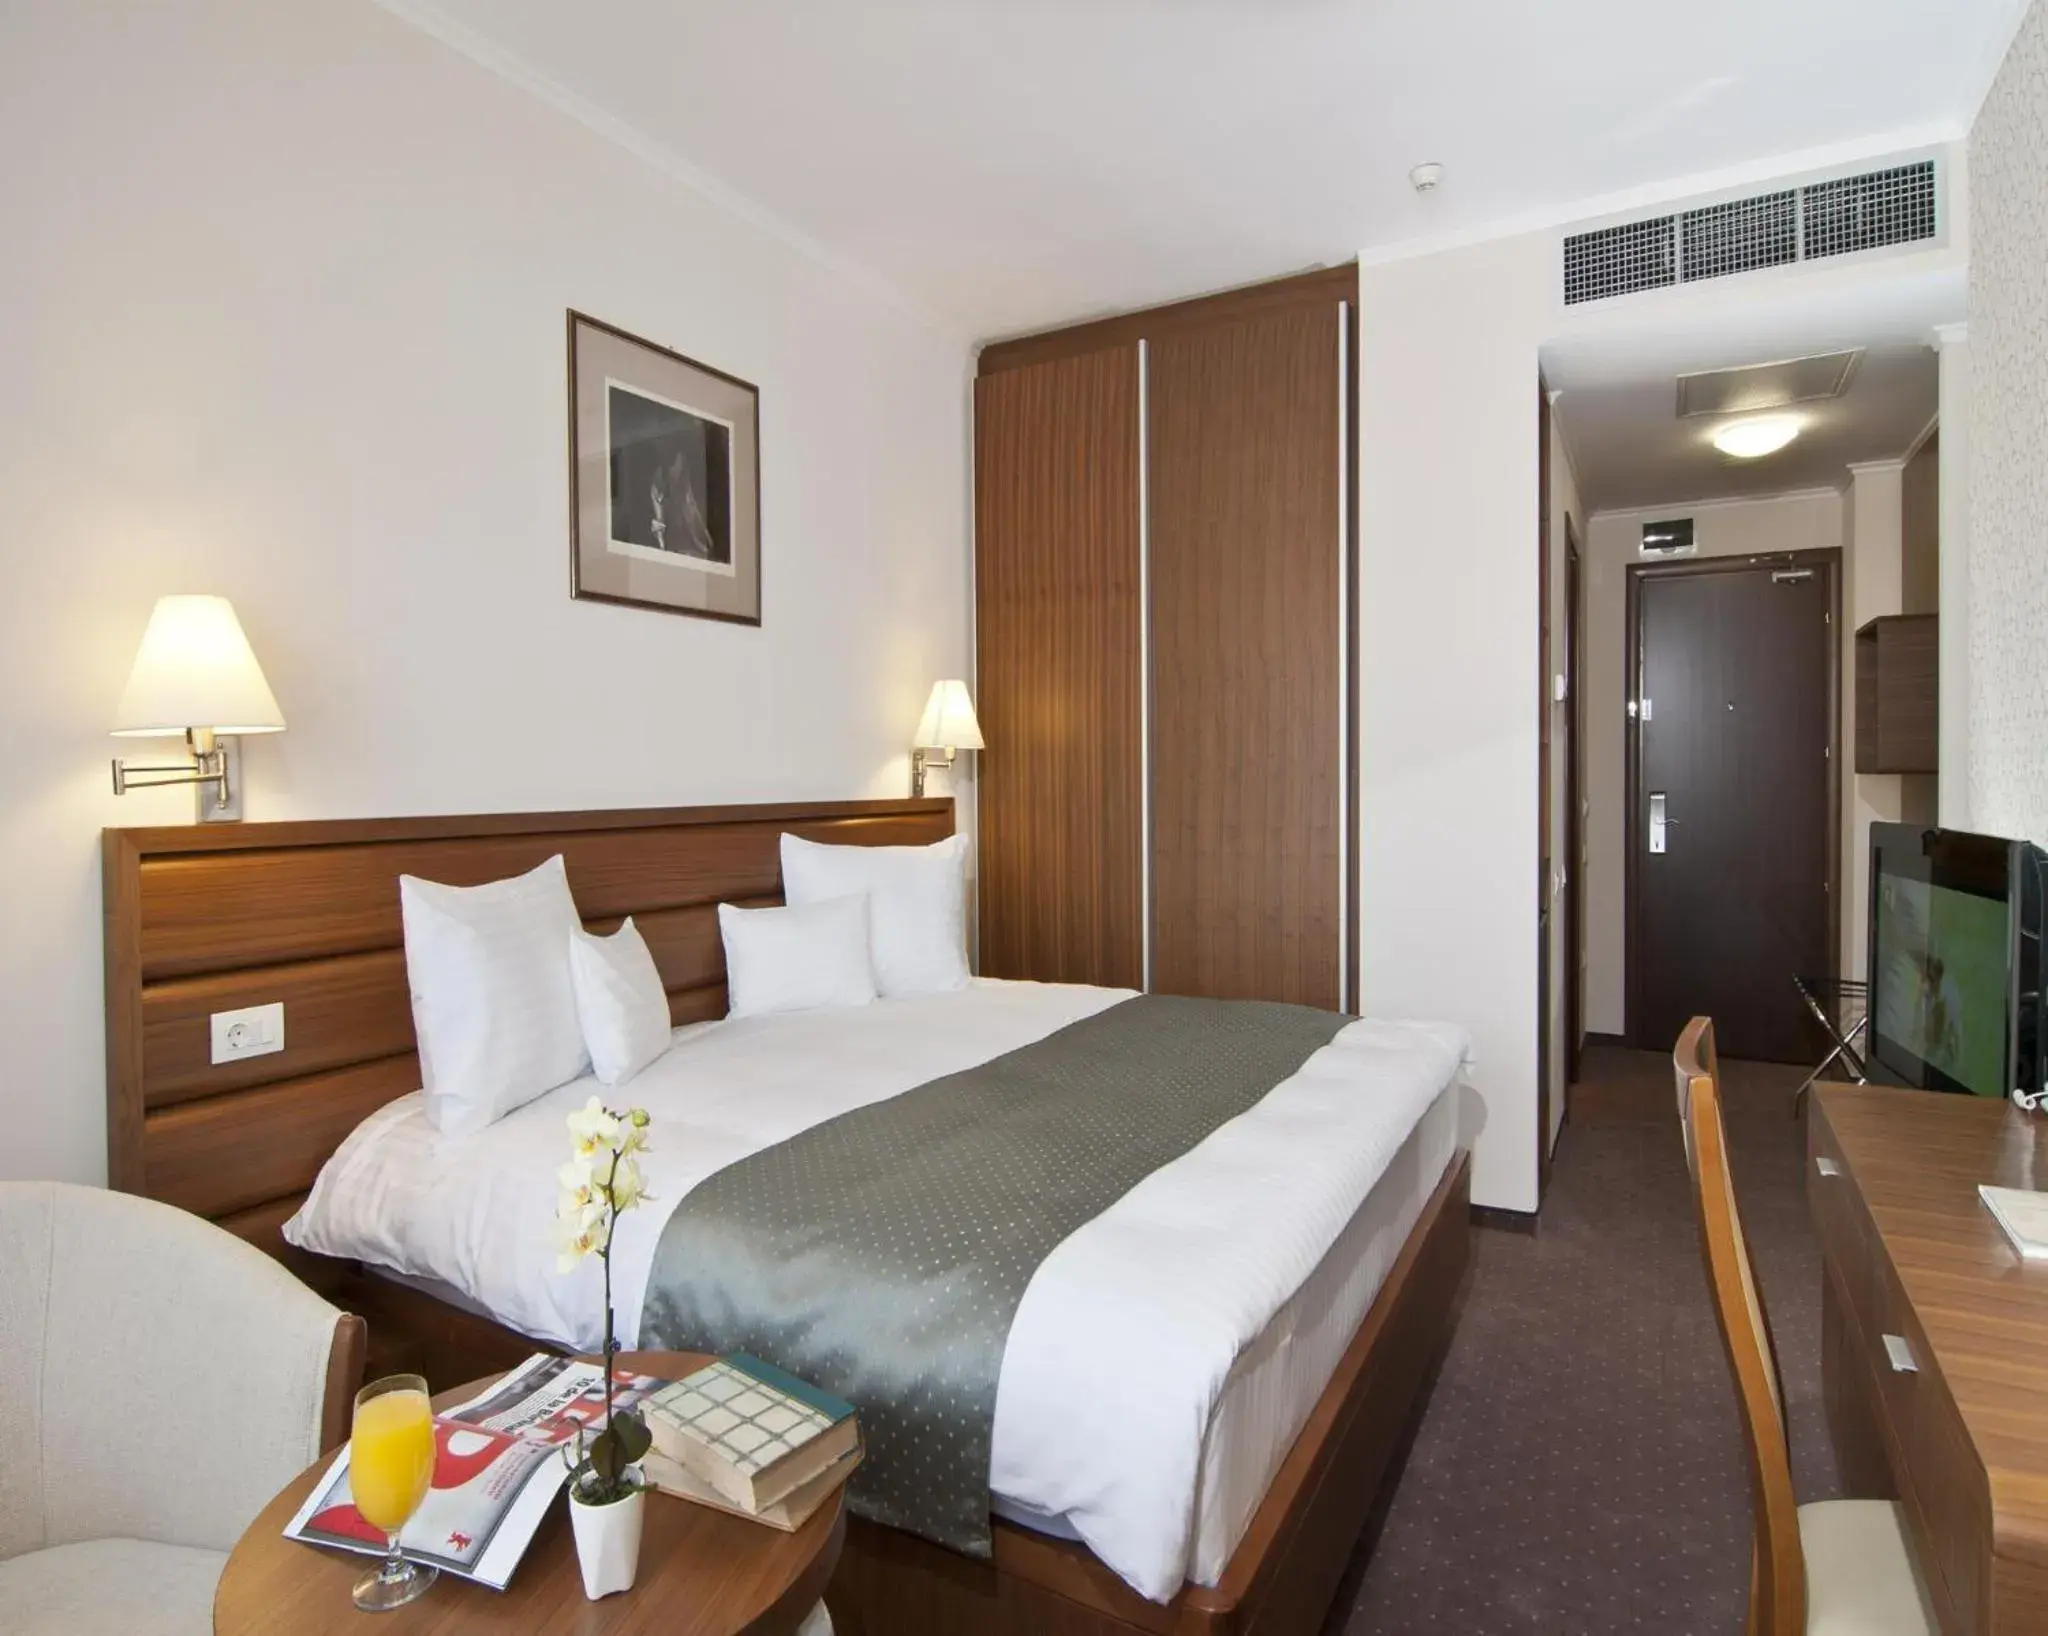 Executive King Room - single occupancy - Non-Smoking in Ramada Hotel Cluj